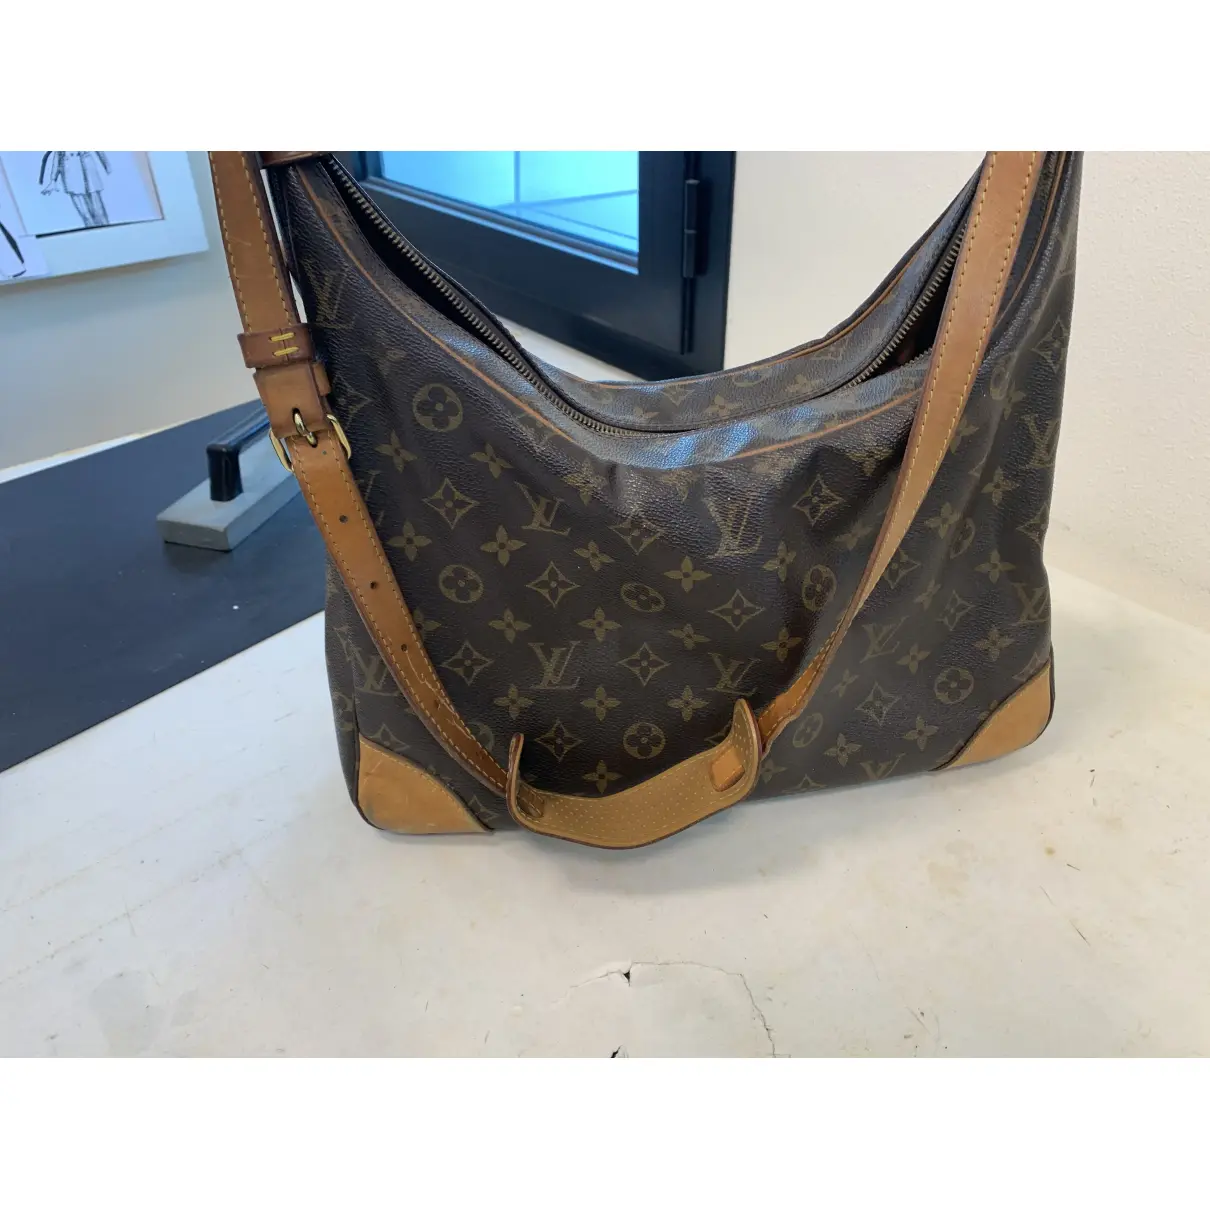 Buy Louis Vuitton Shopping cloth handbag online